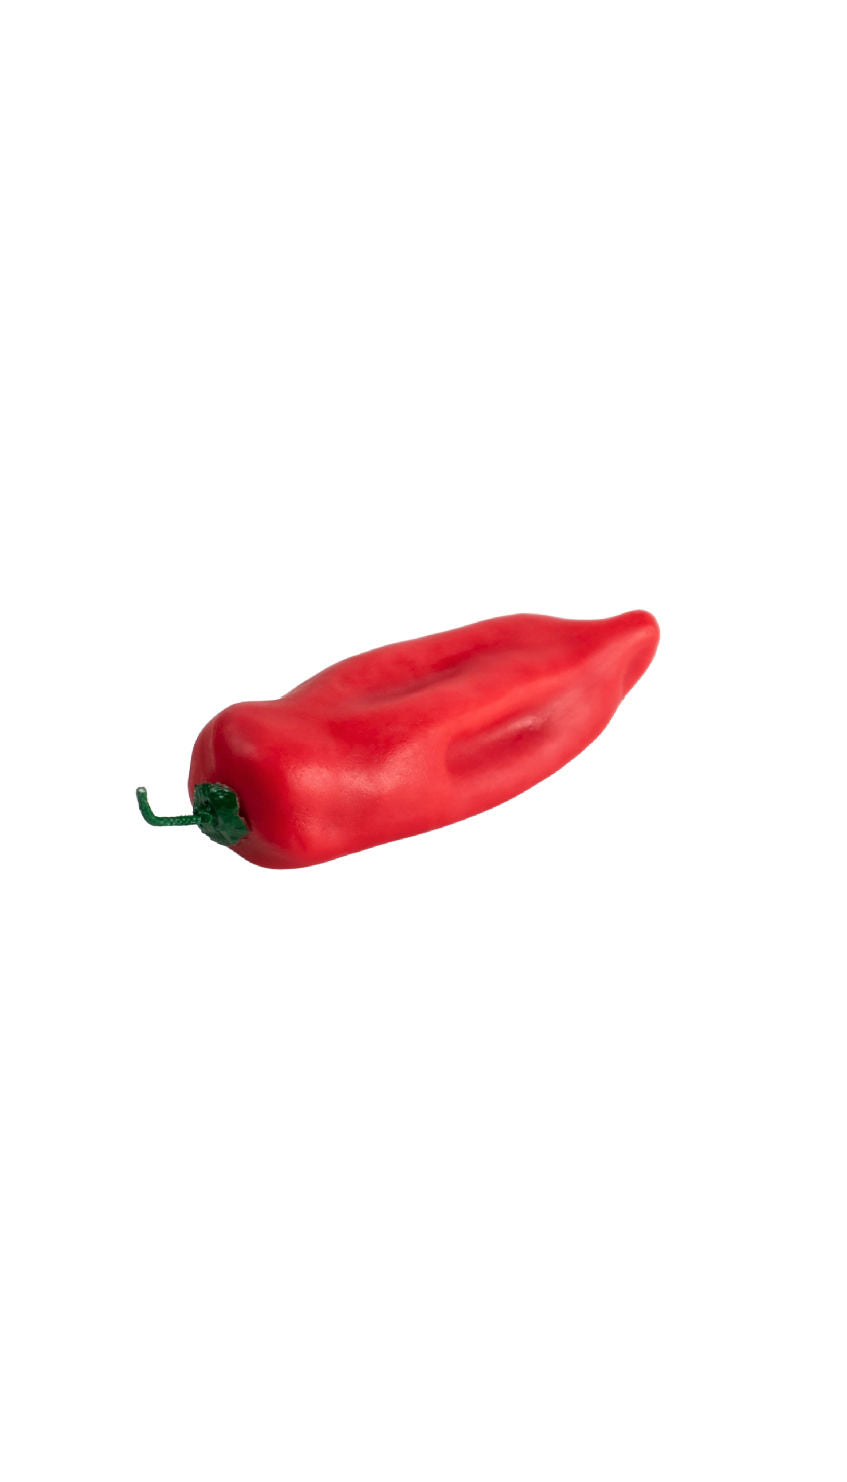 Hot Red - Spicy Hot Pepper